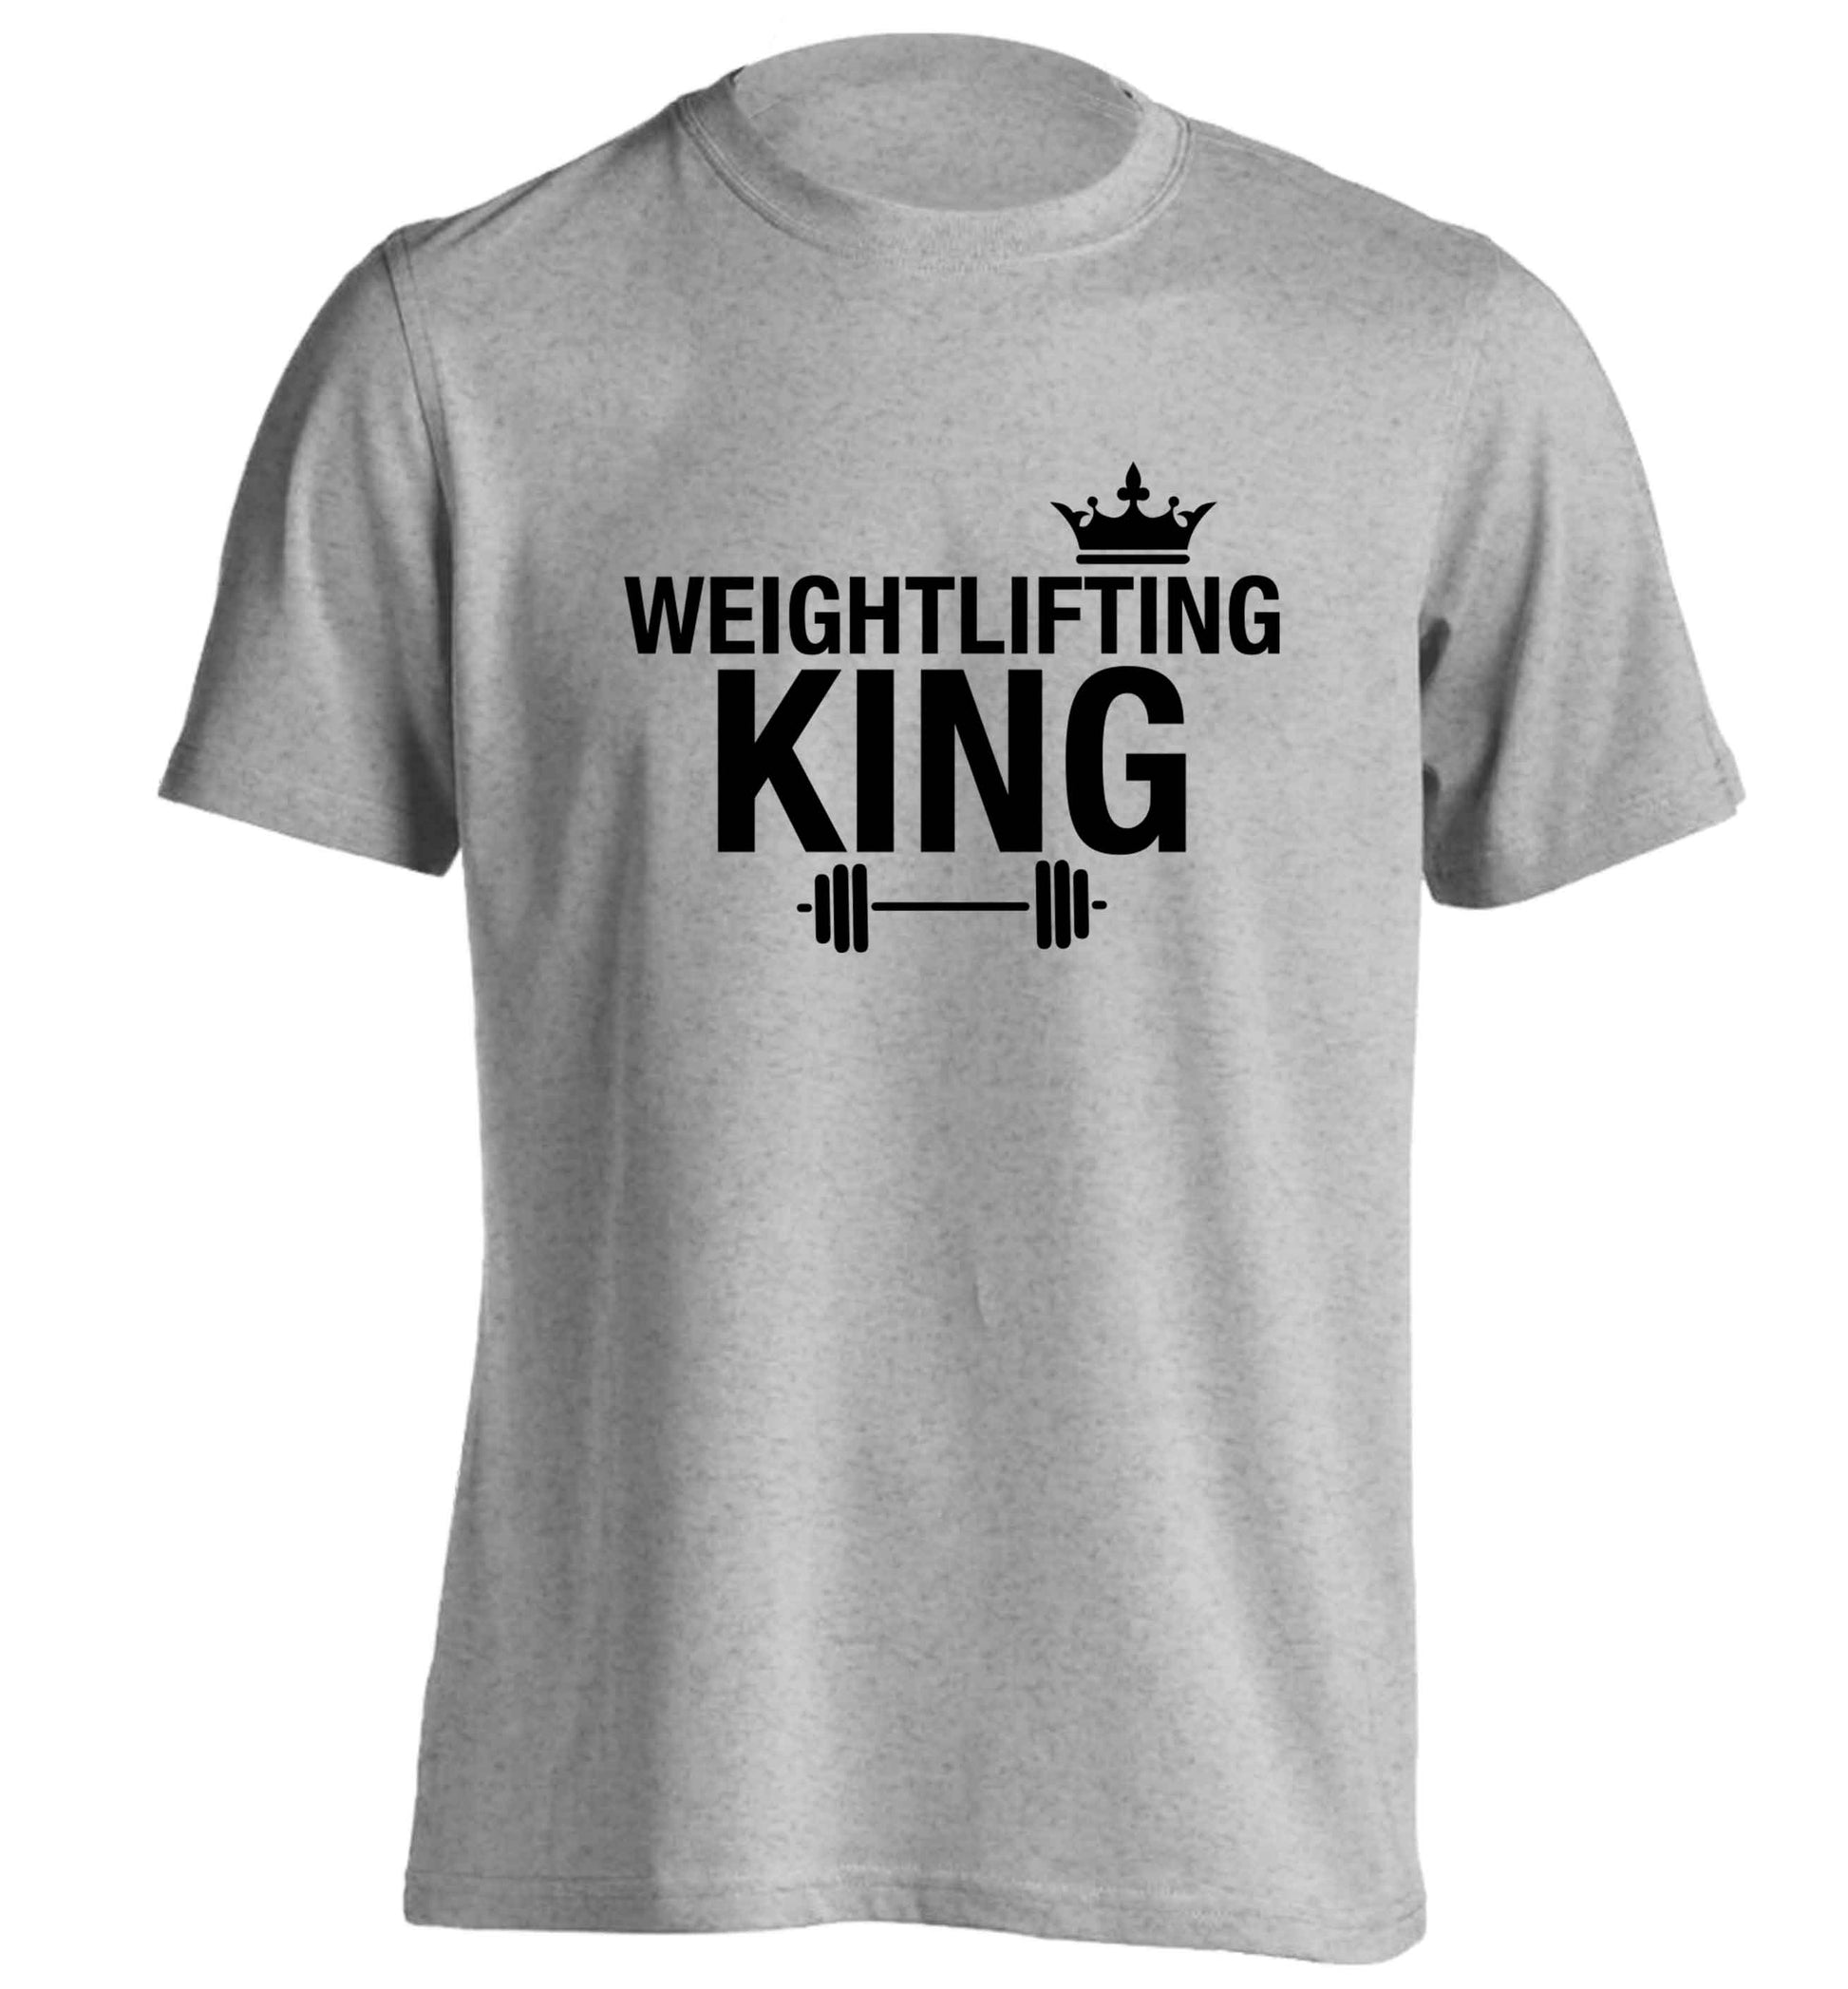 Weightlifting king adults unisex grey Tshirt 2XL